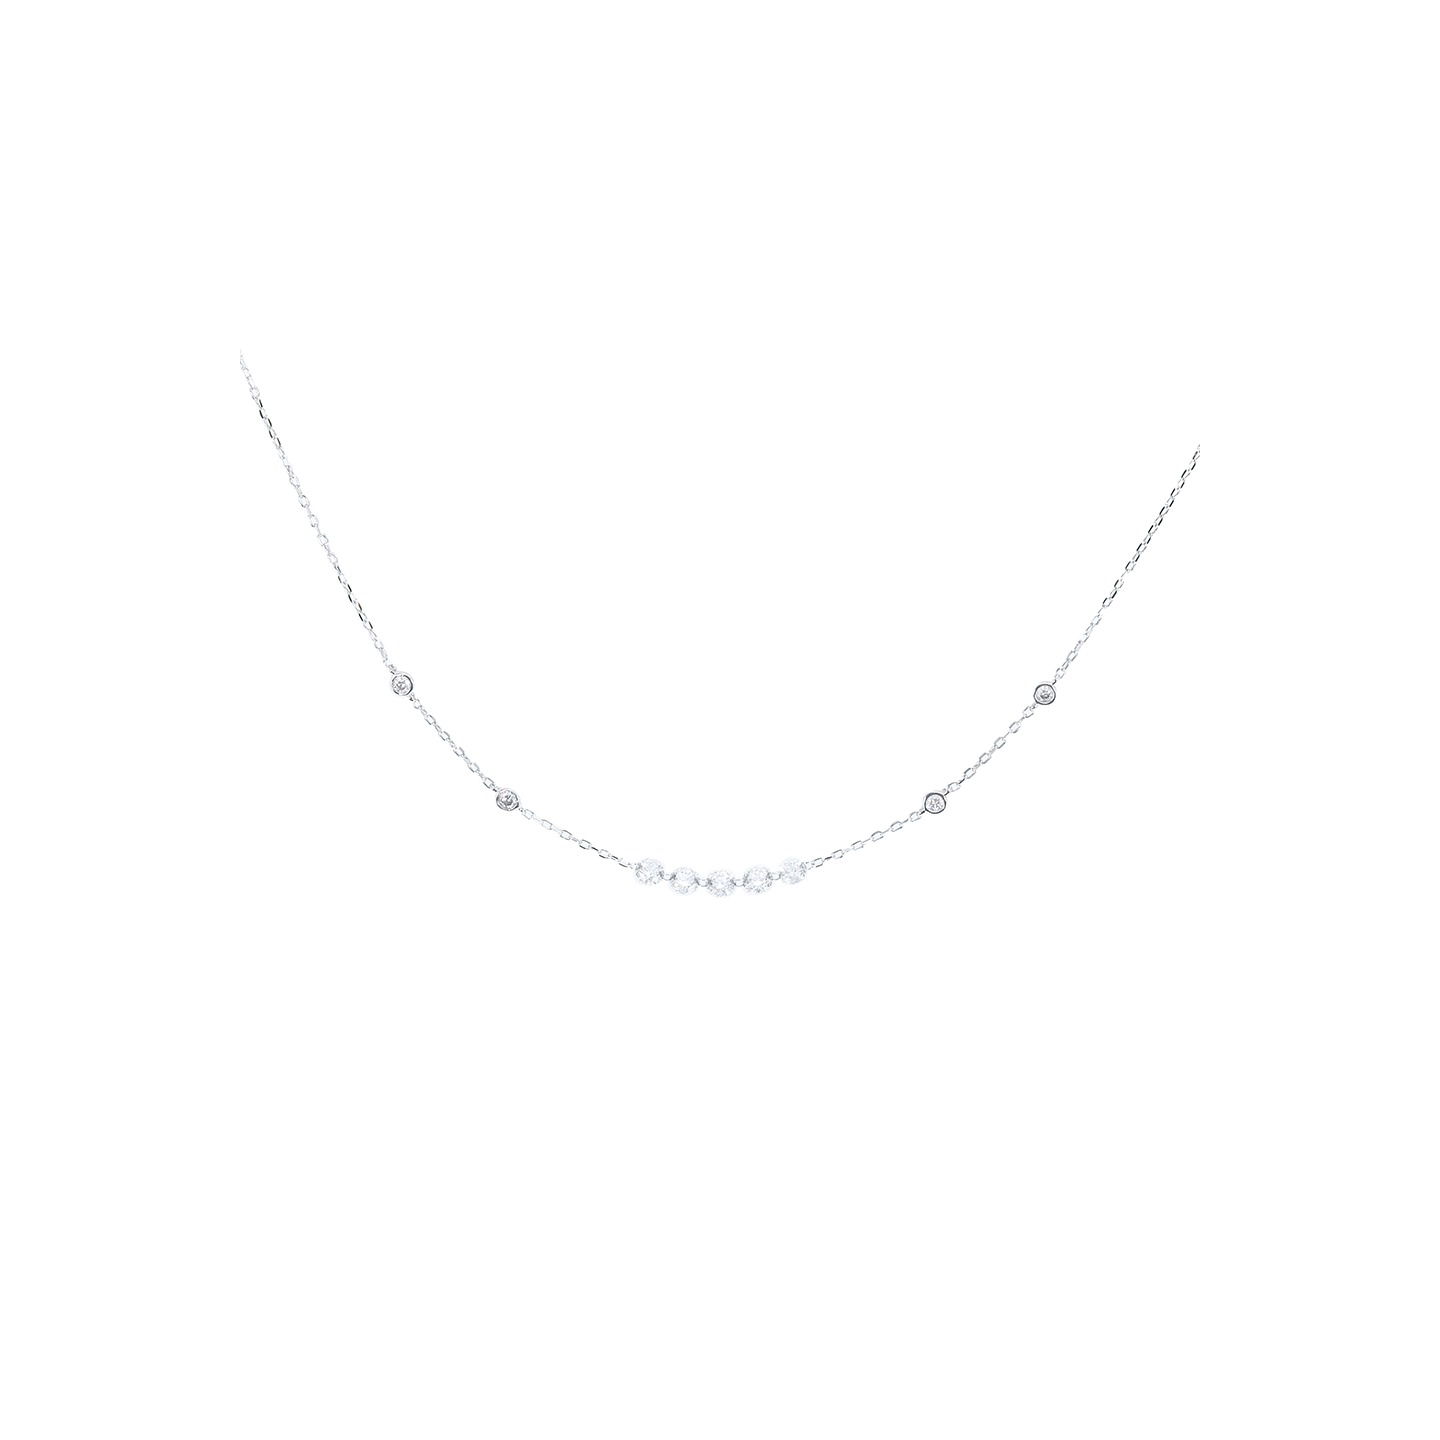 Kai Linz White Gold 'Mila' Floating Diamond Necklace